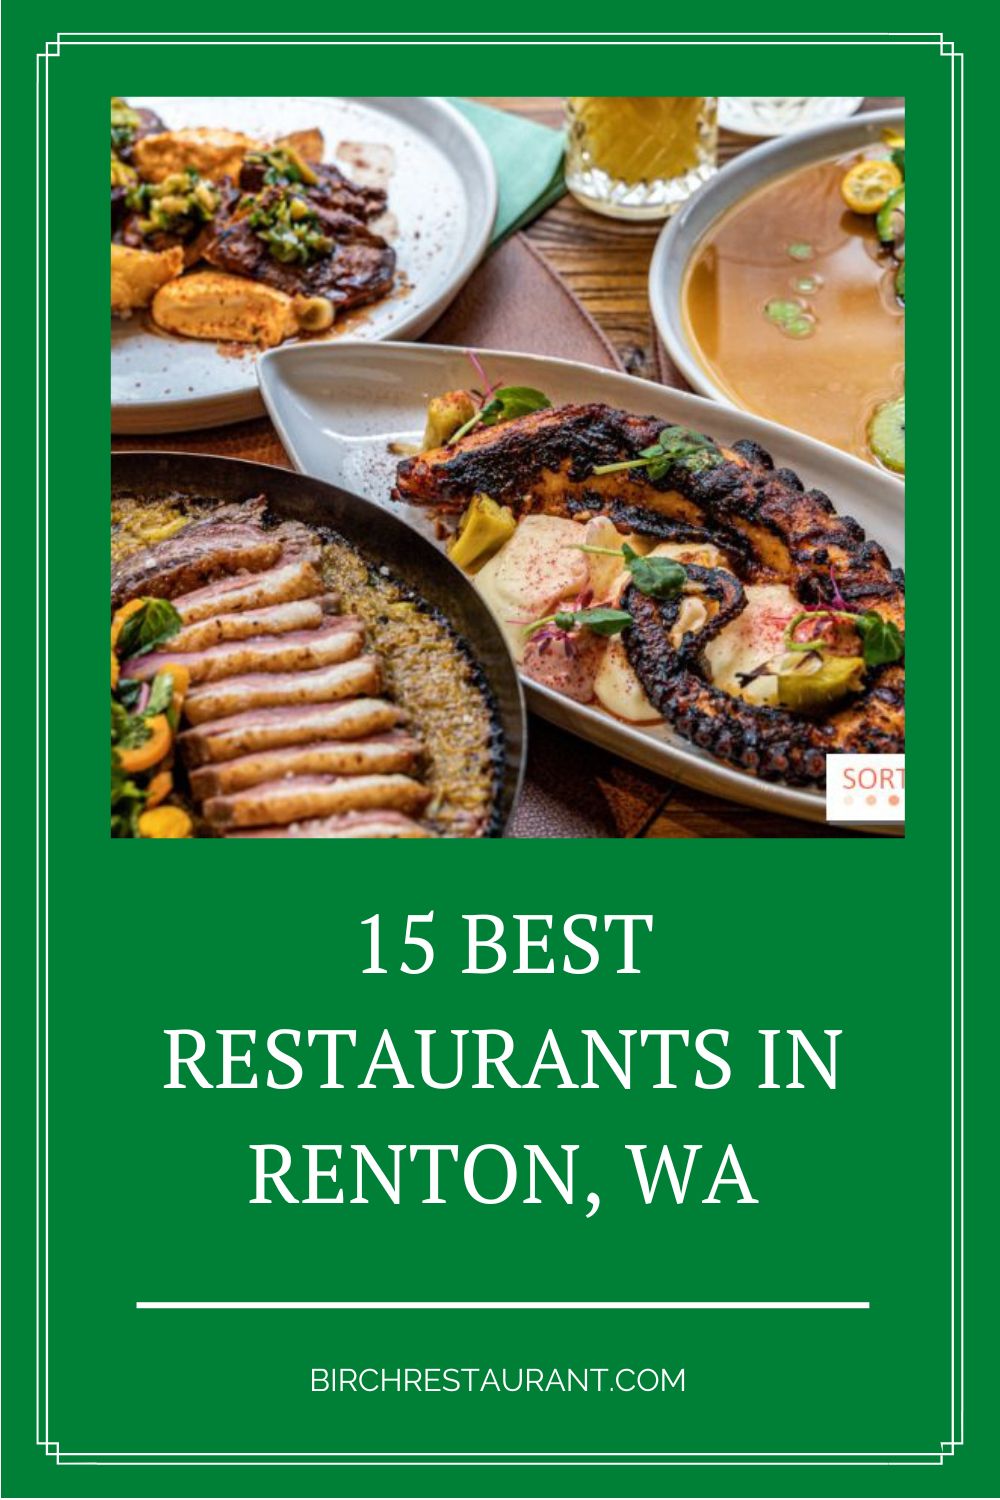 Best Restaurants in Renton